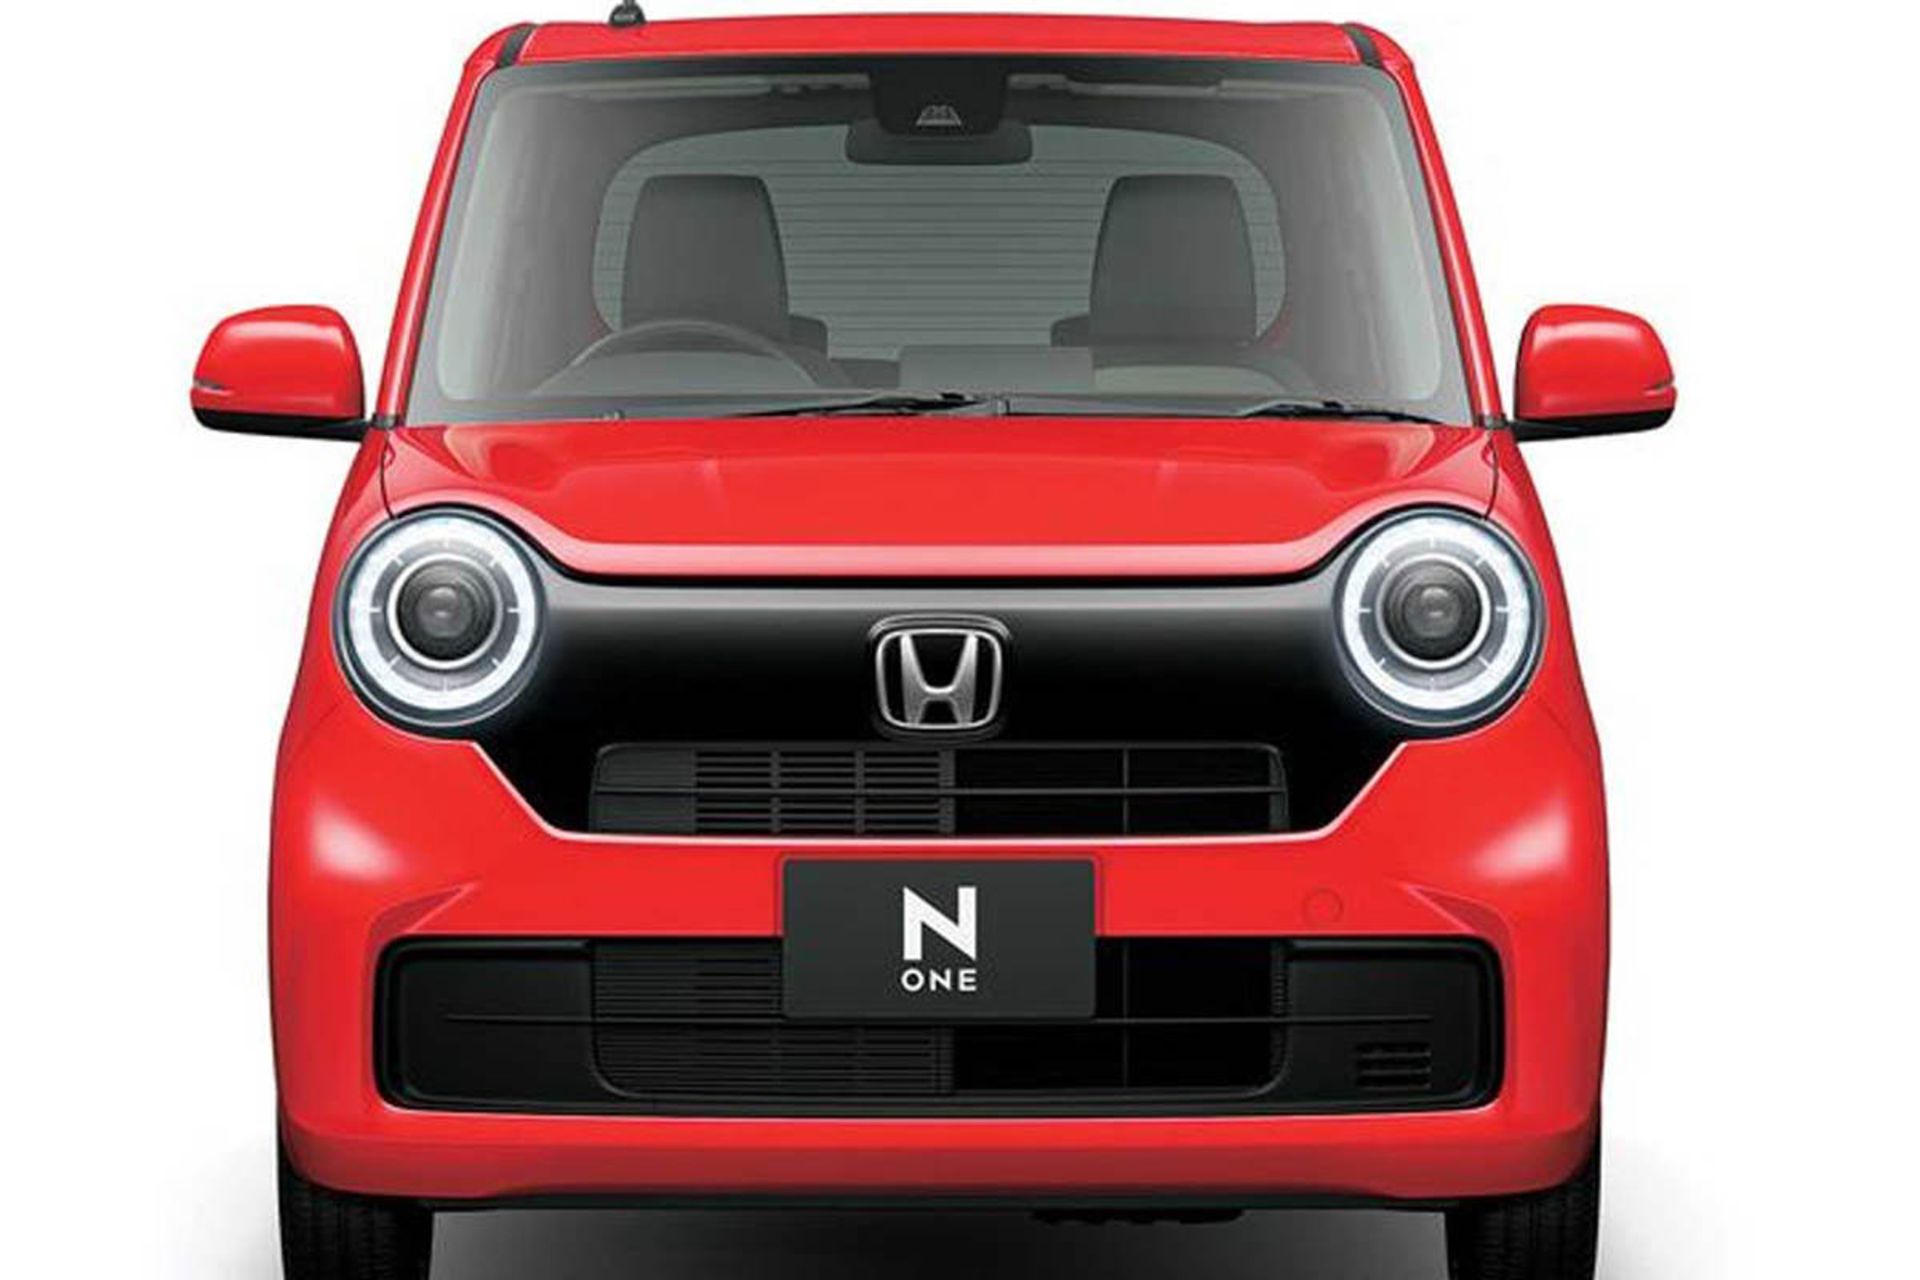 مرجع متخصصين ايران نماي جلو خودرو هاچ بك / hatchback هوندا ان-وان / Honda N-One قرمز رنگ